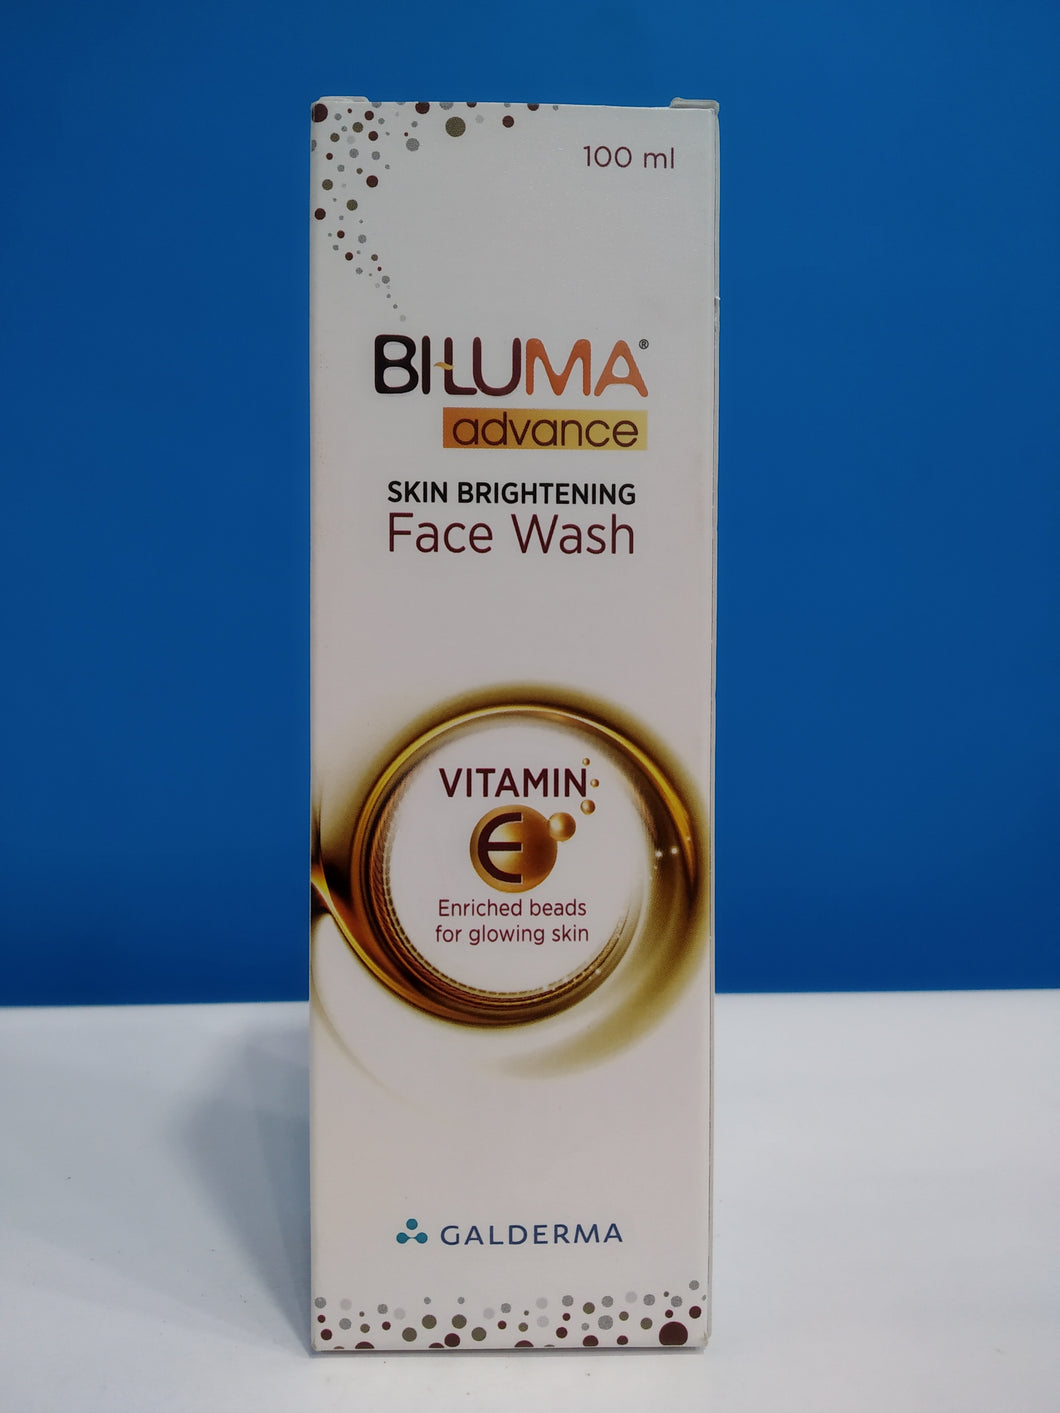 Biluma Advance Skin Brightening Face Wash (100ml)